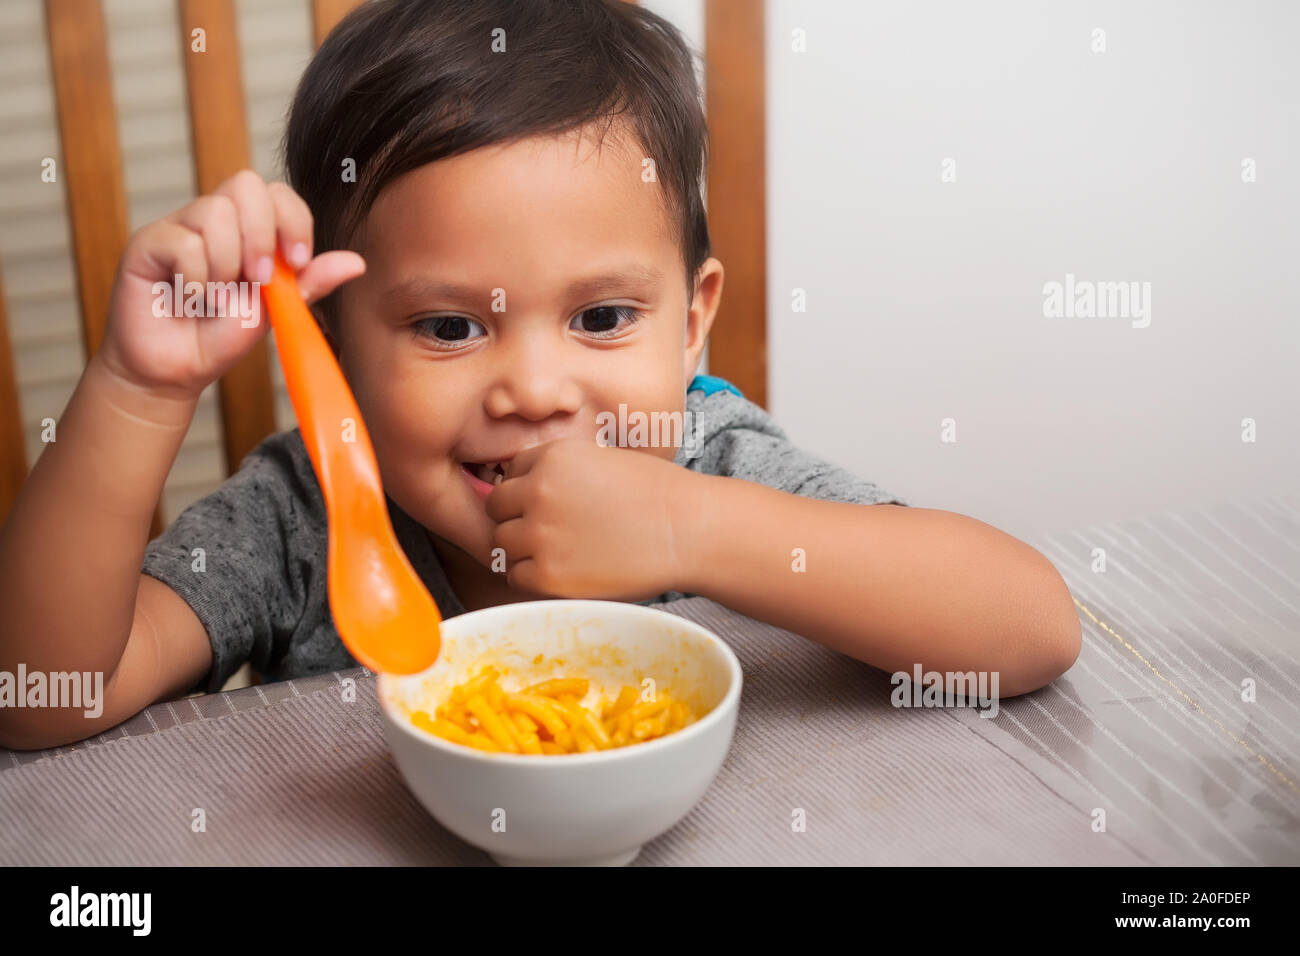 Eine nette junge Zicklein an einem Tisch sitzen mit ein eifriger Mimik und Löffel in der Hand, bereit zum Start Essen auf seinem eigenen. Stockfoto